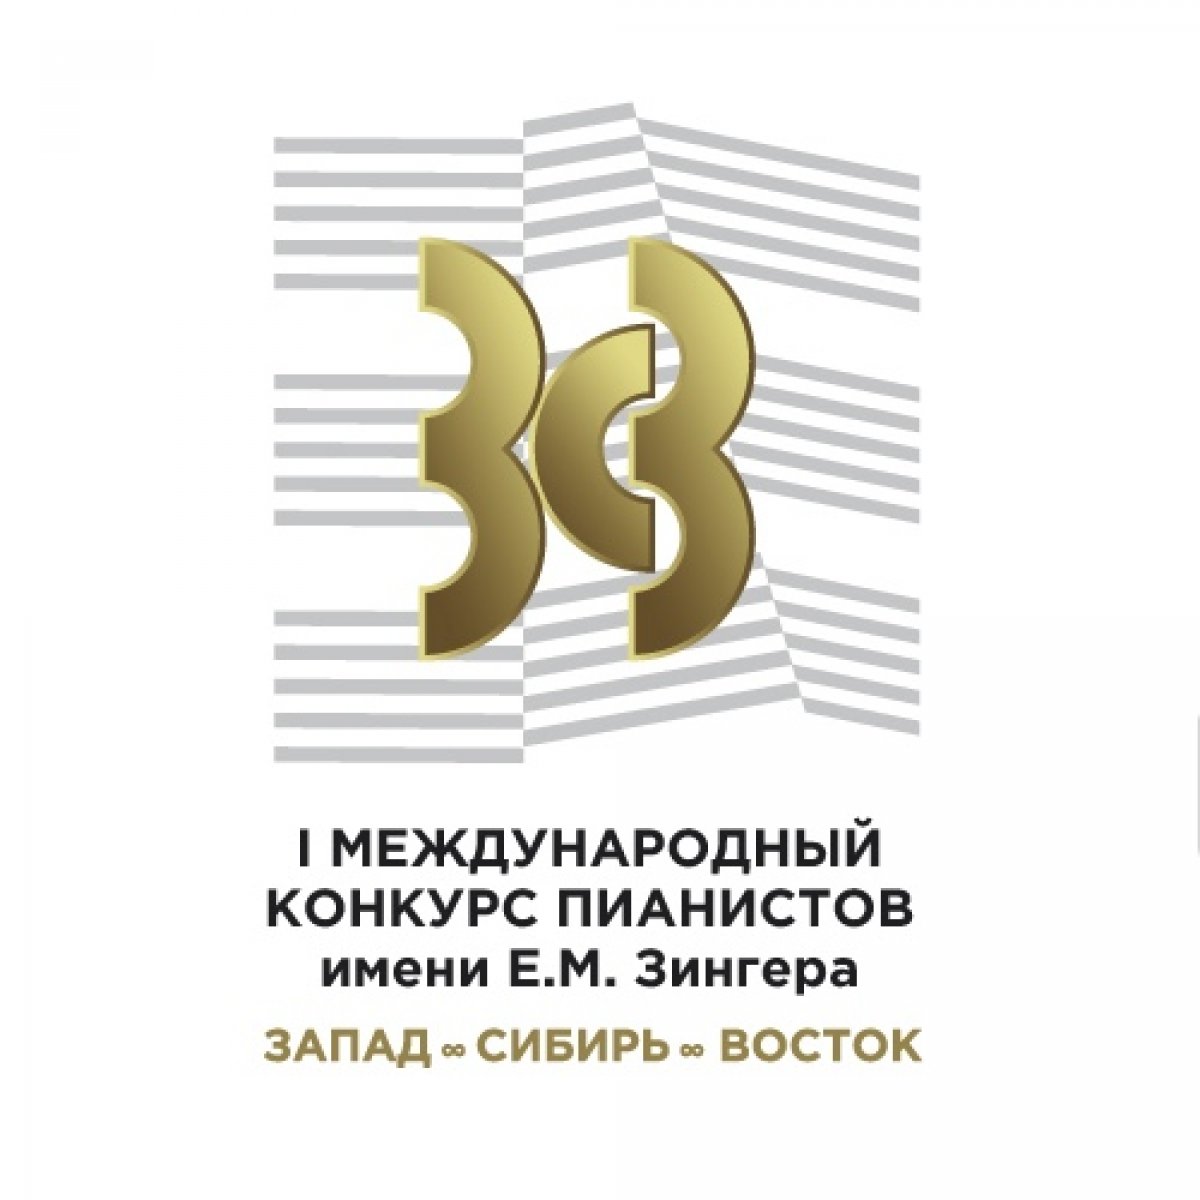 Продолжается прием заявок на I Международный конкурс «Запад — Сибирь — Восток»: конкурс пианистов имени Е. М. Зингера, который состоится с 24 по 31 марта 2020 года!